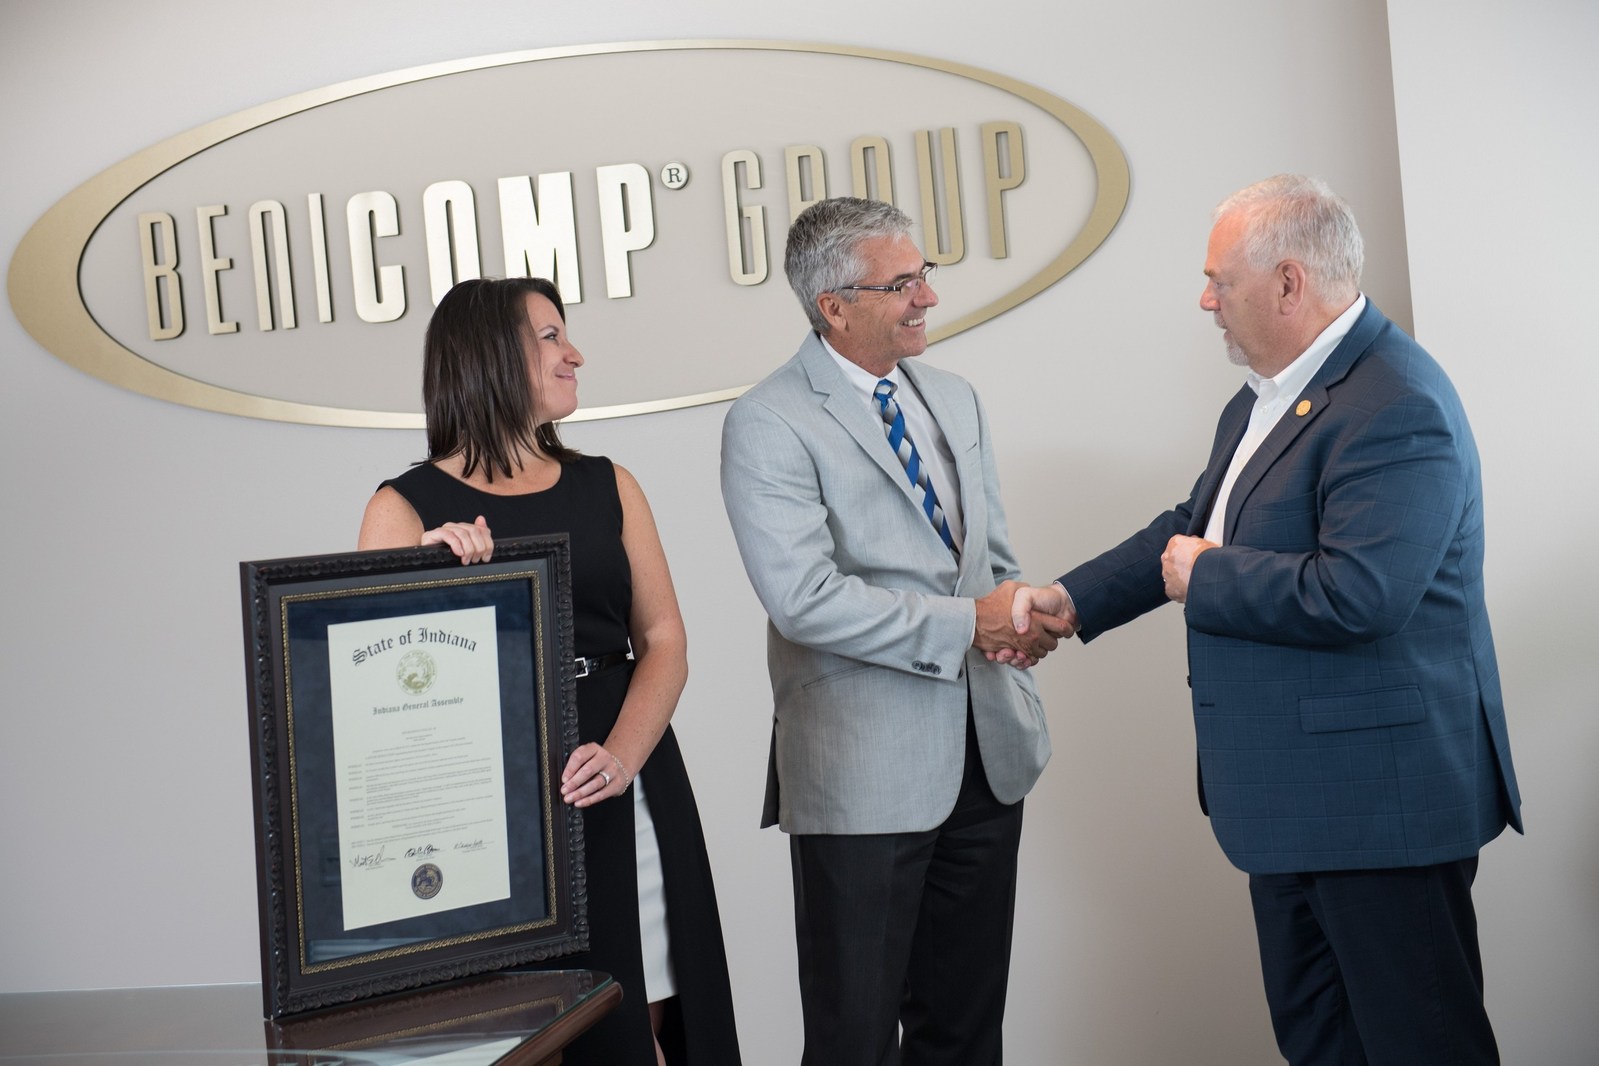 benicomp celebrates 55 years